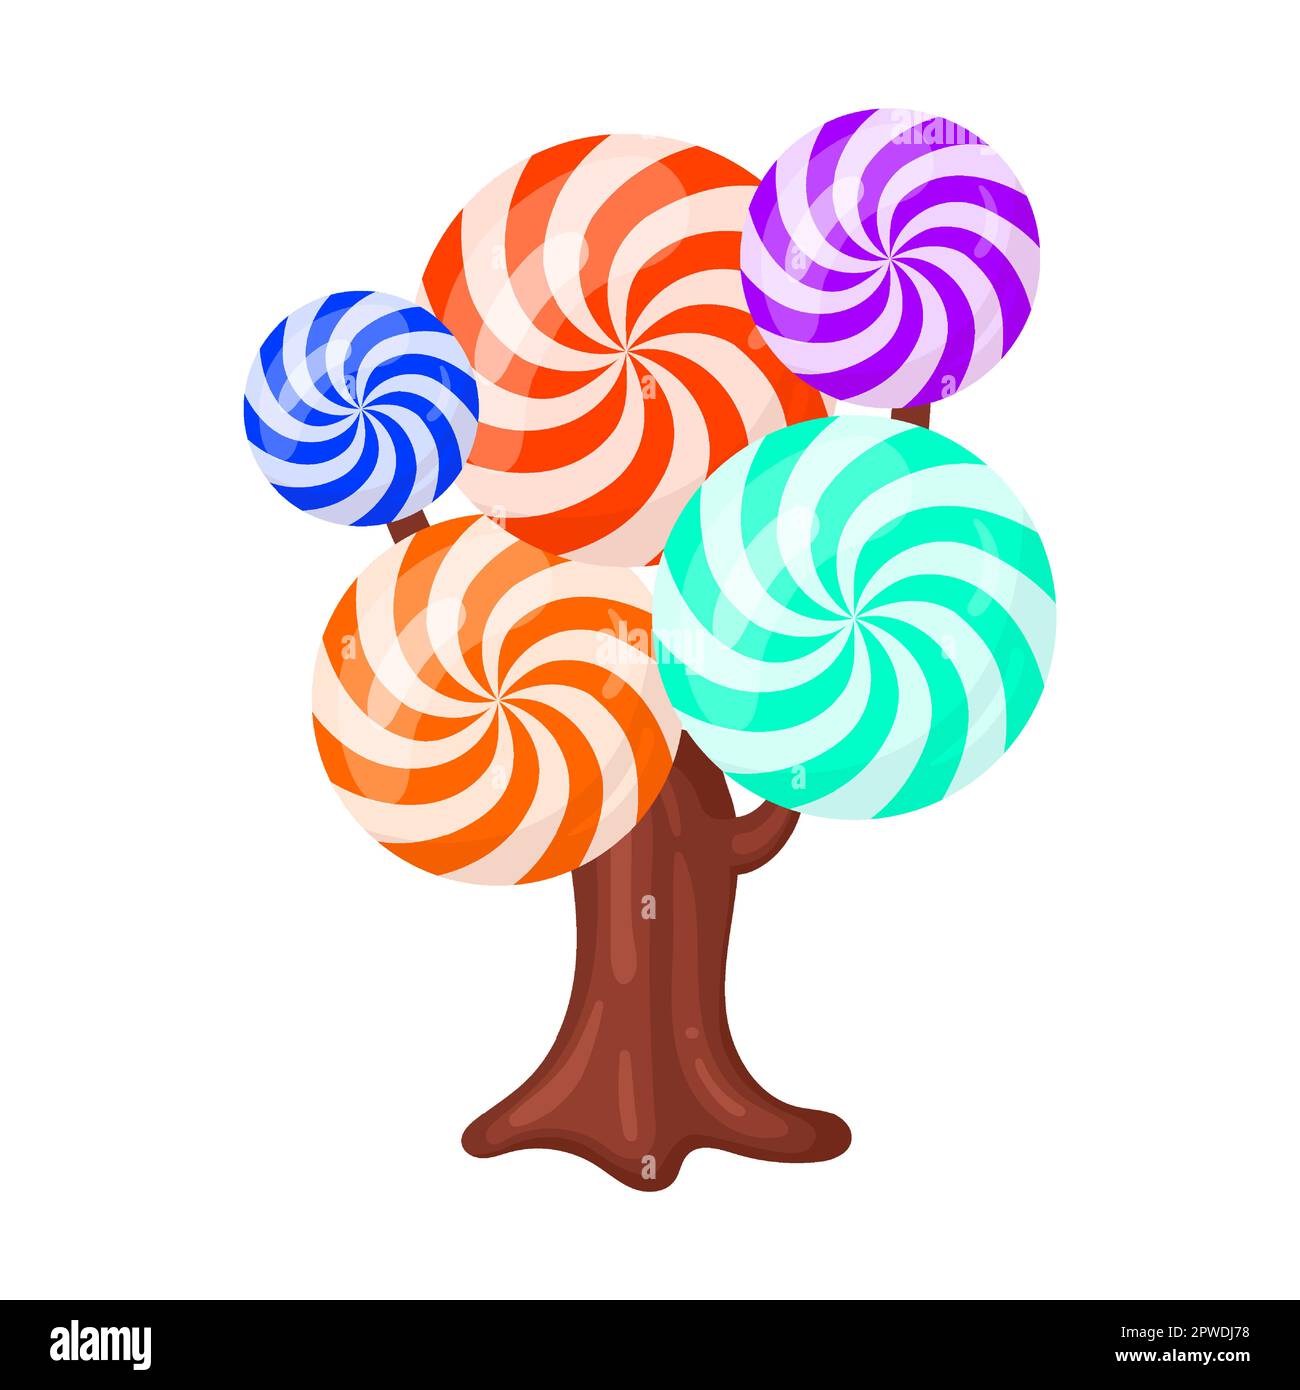 Candie in Form eines Baumes gestreifte runde Lutscher, Vektordarstellung. Fantasy Land Karamell und Schokolade Desserts, Cupcakes, Kekse Stock Vektor